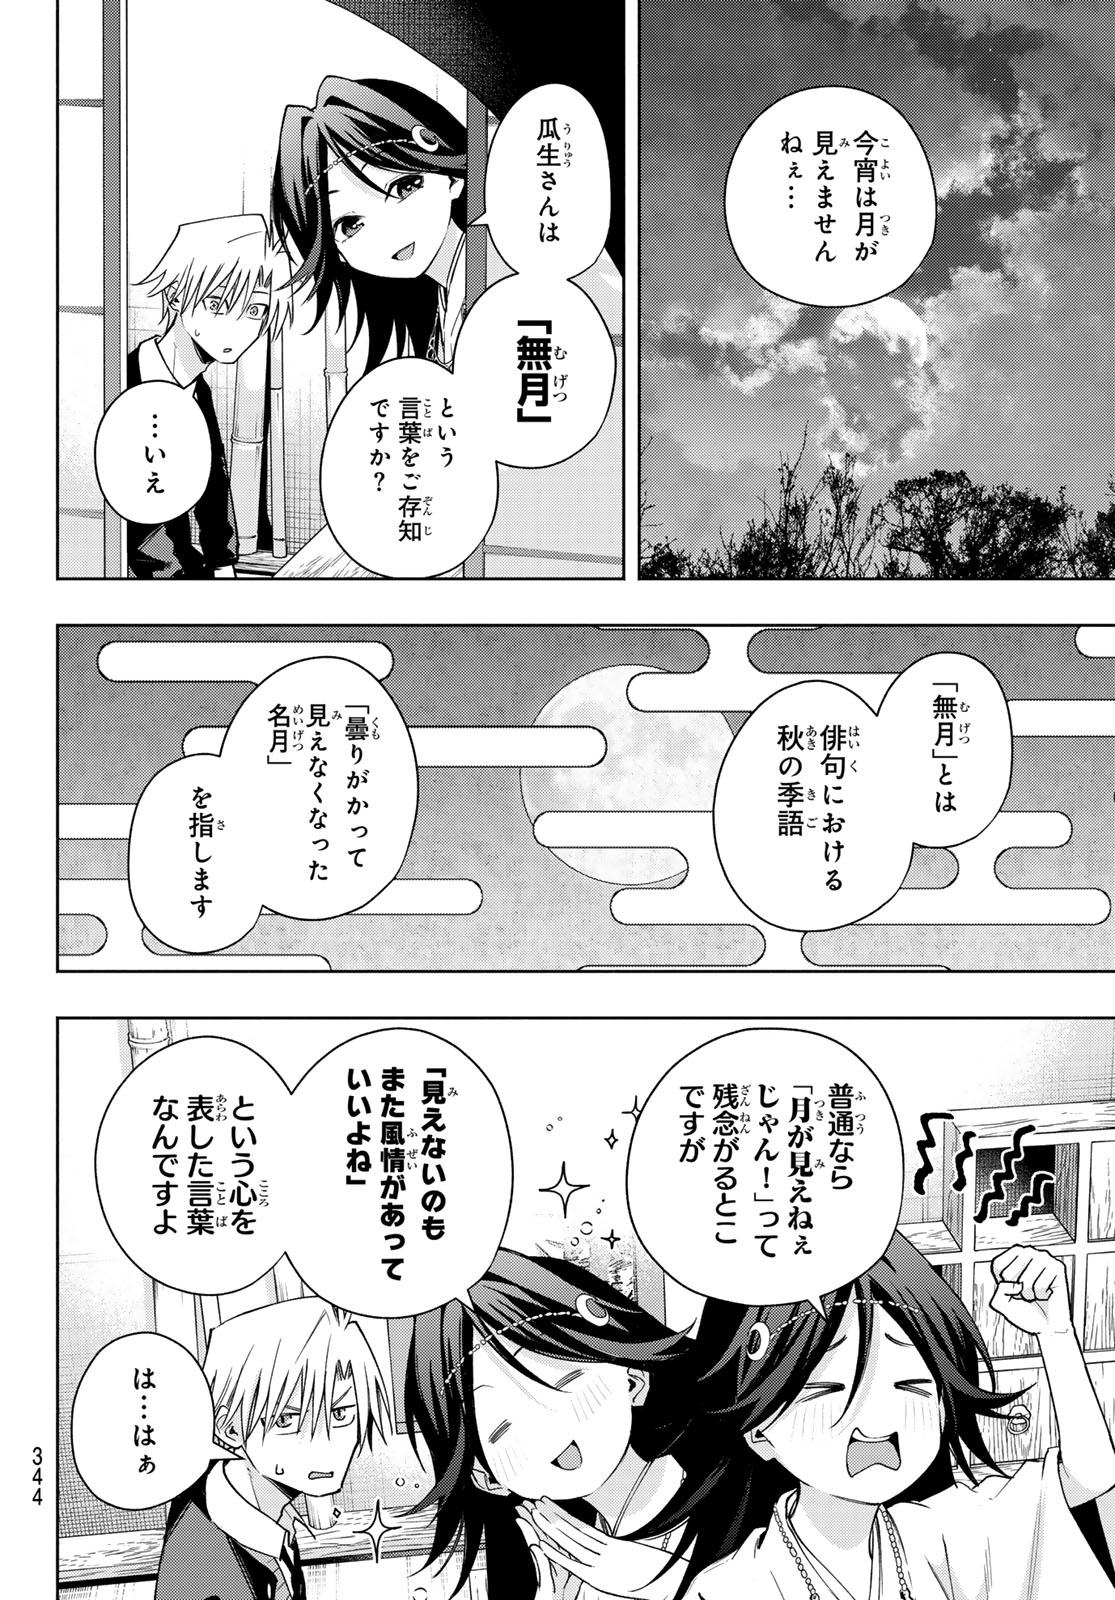 Amagami-san Chi no Enmusubi - Chapter 136 - Page 6